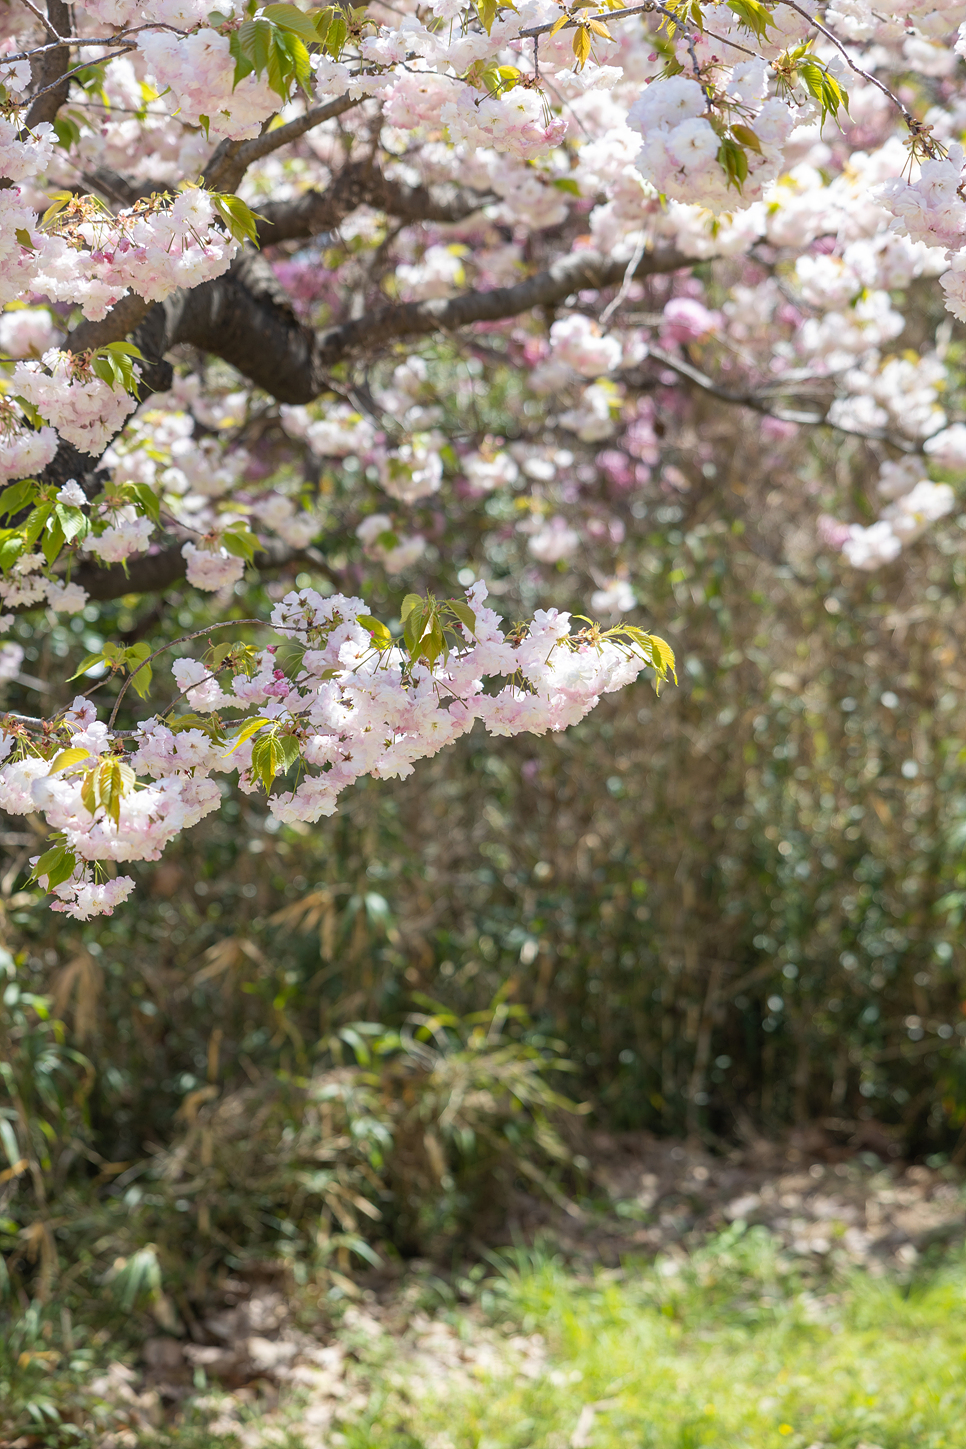 부산 민주공원 겹벚꽃 명소 부산 꽃구경 피크닉 봄나들이